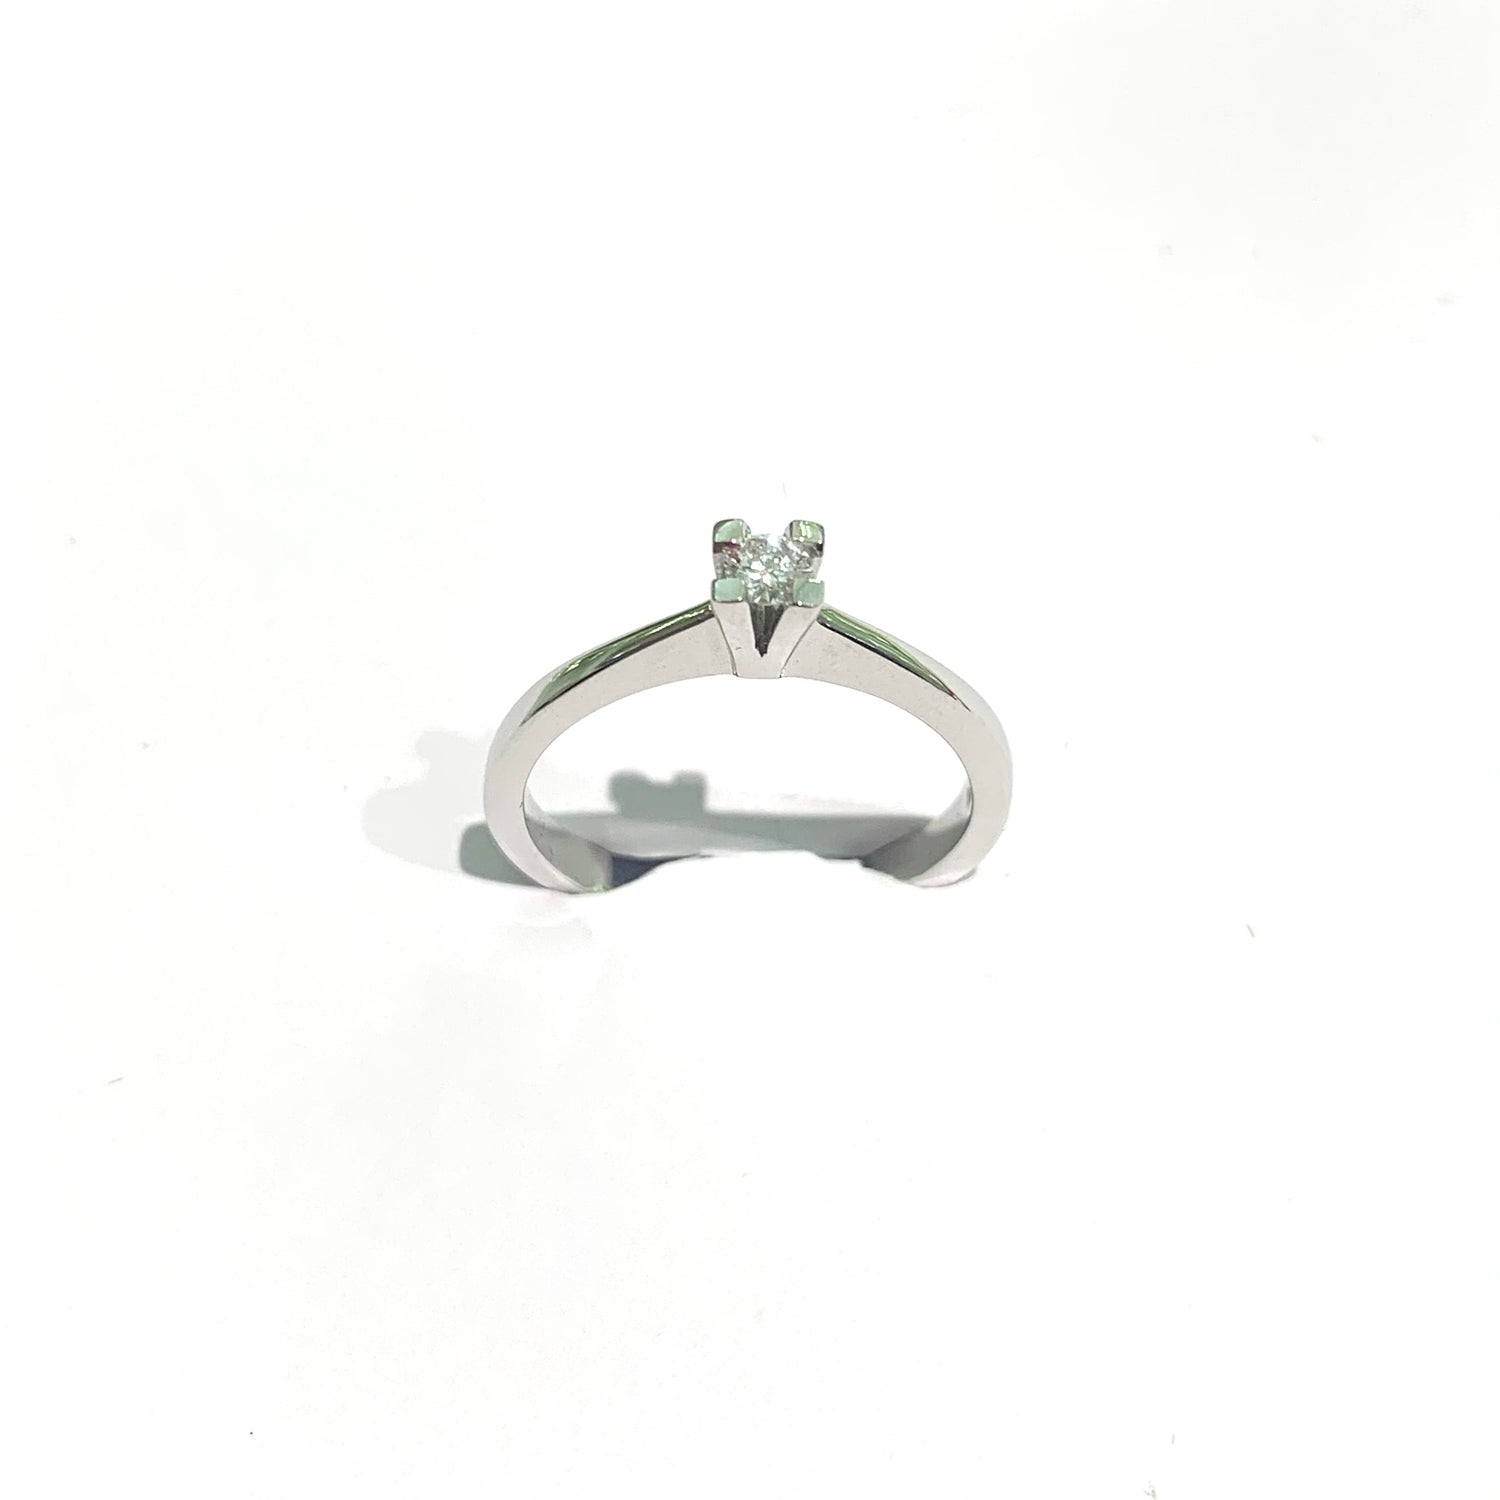 Anello in oro bianco 18kt con diamante solitario e quattro griffes.  Diamante 0,12 carati, dimensione 0,3 cm.  Misura 12.